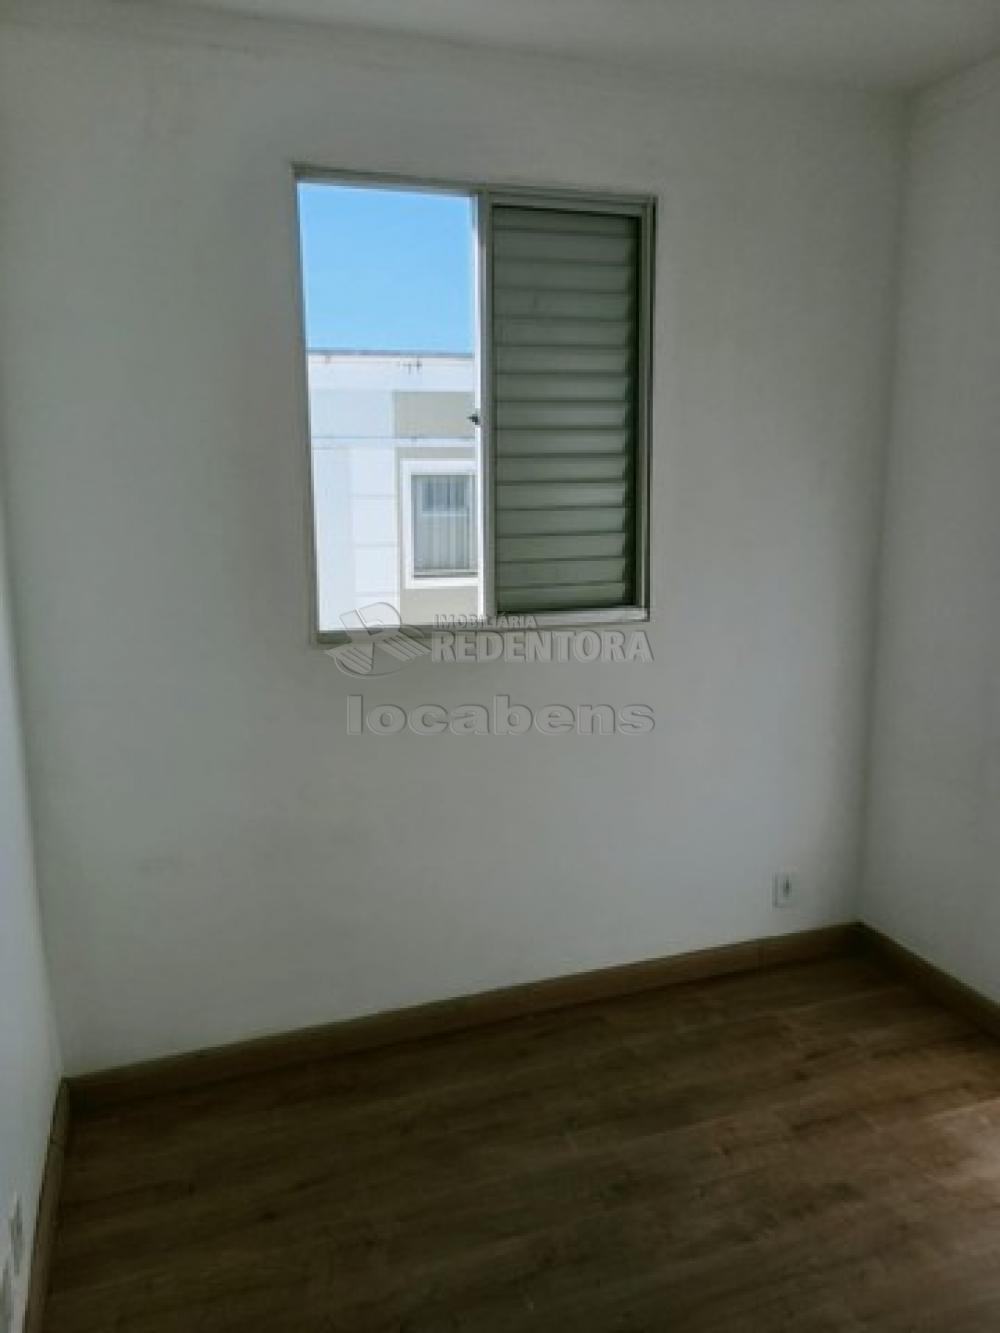 Alugar Apartamento / Padrão em São José do Rio Preto R$ 622,00 - Foto 10